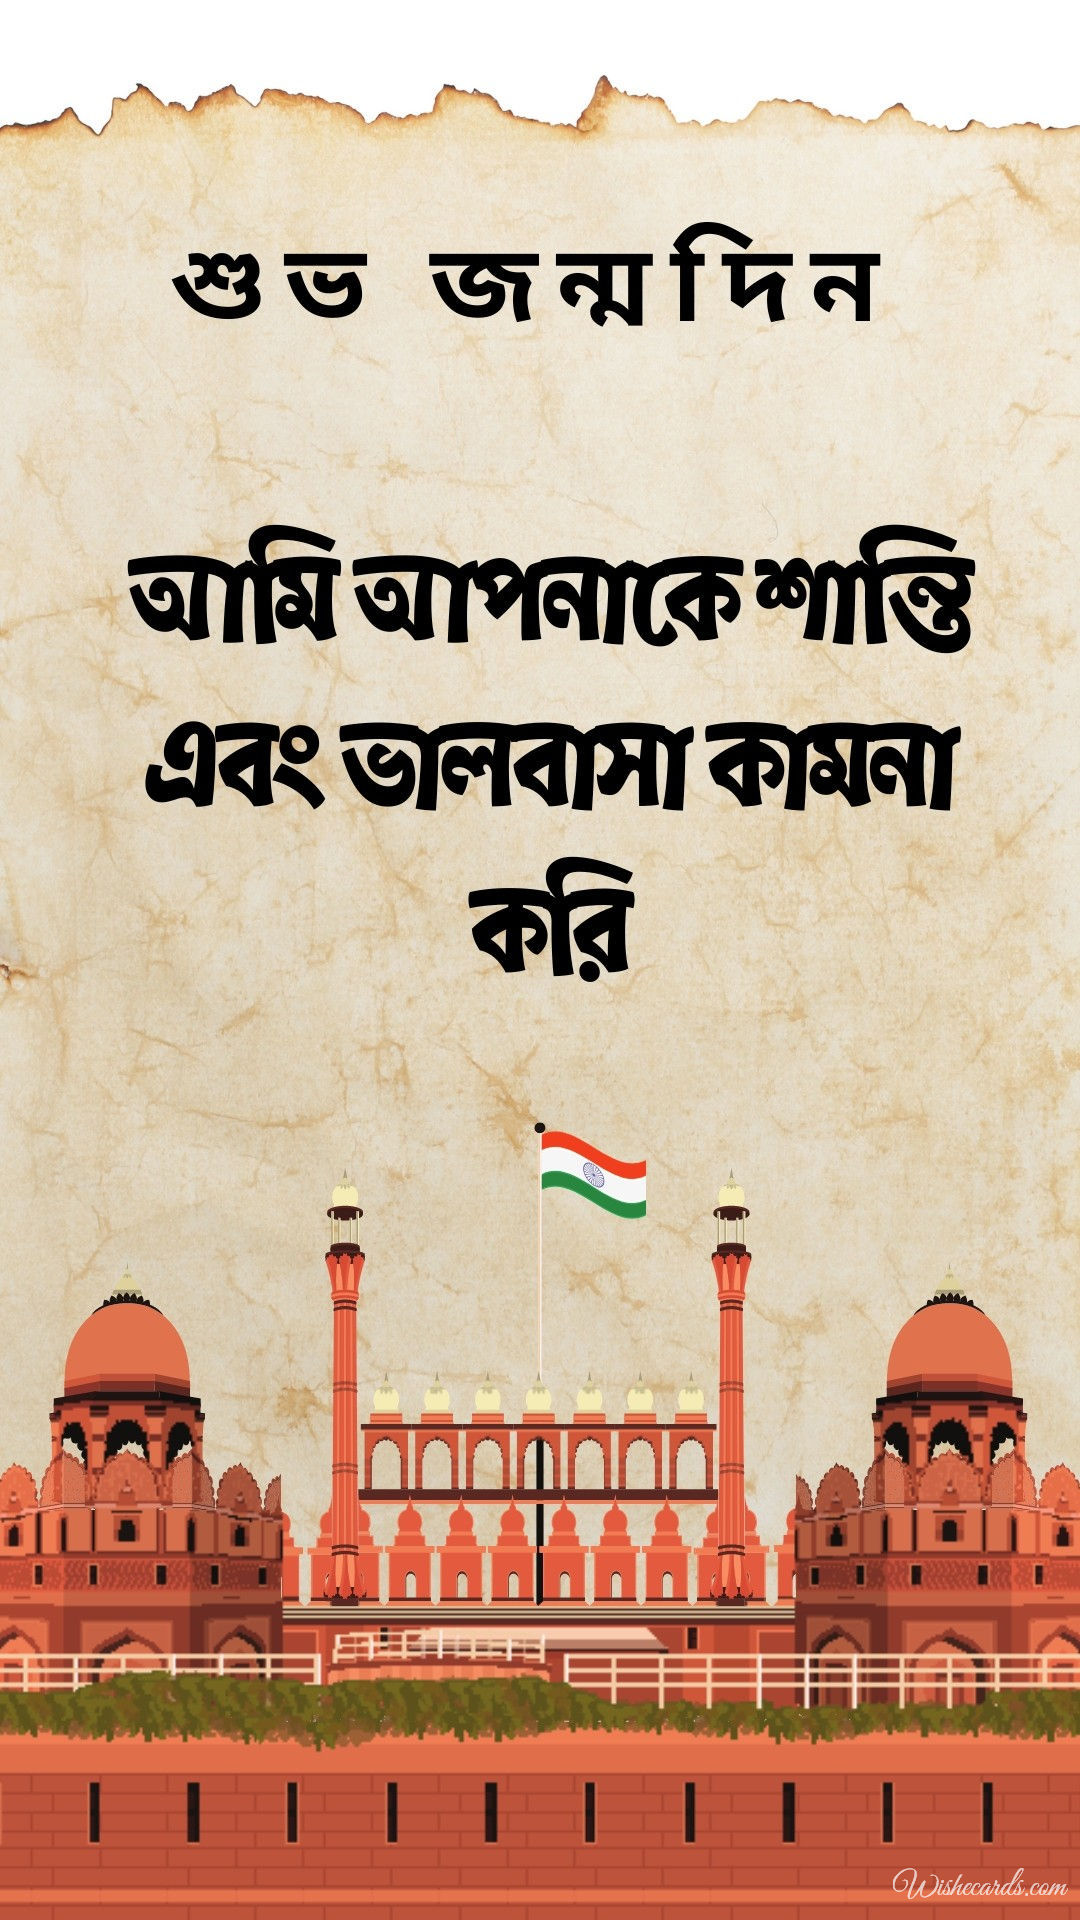 Happy Birthday Image in Bengali